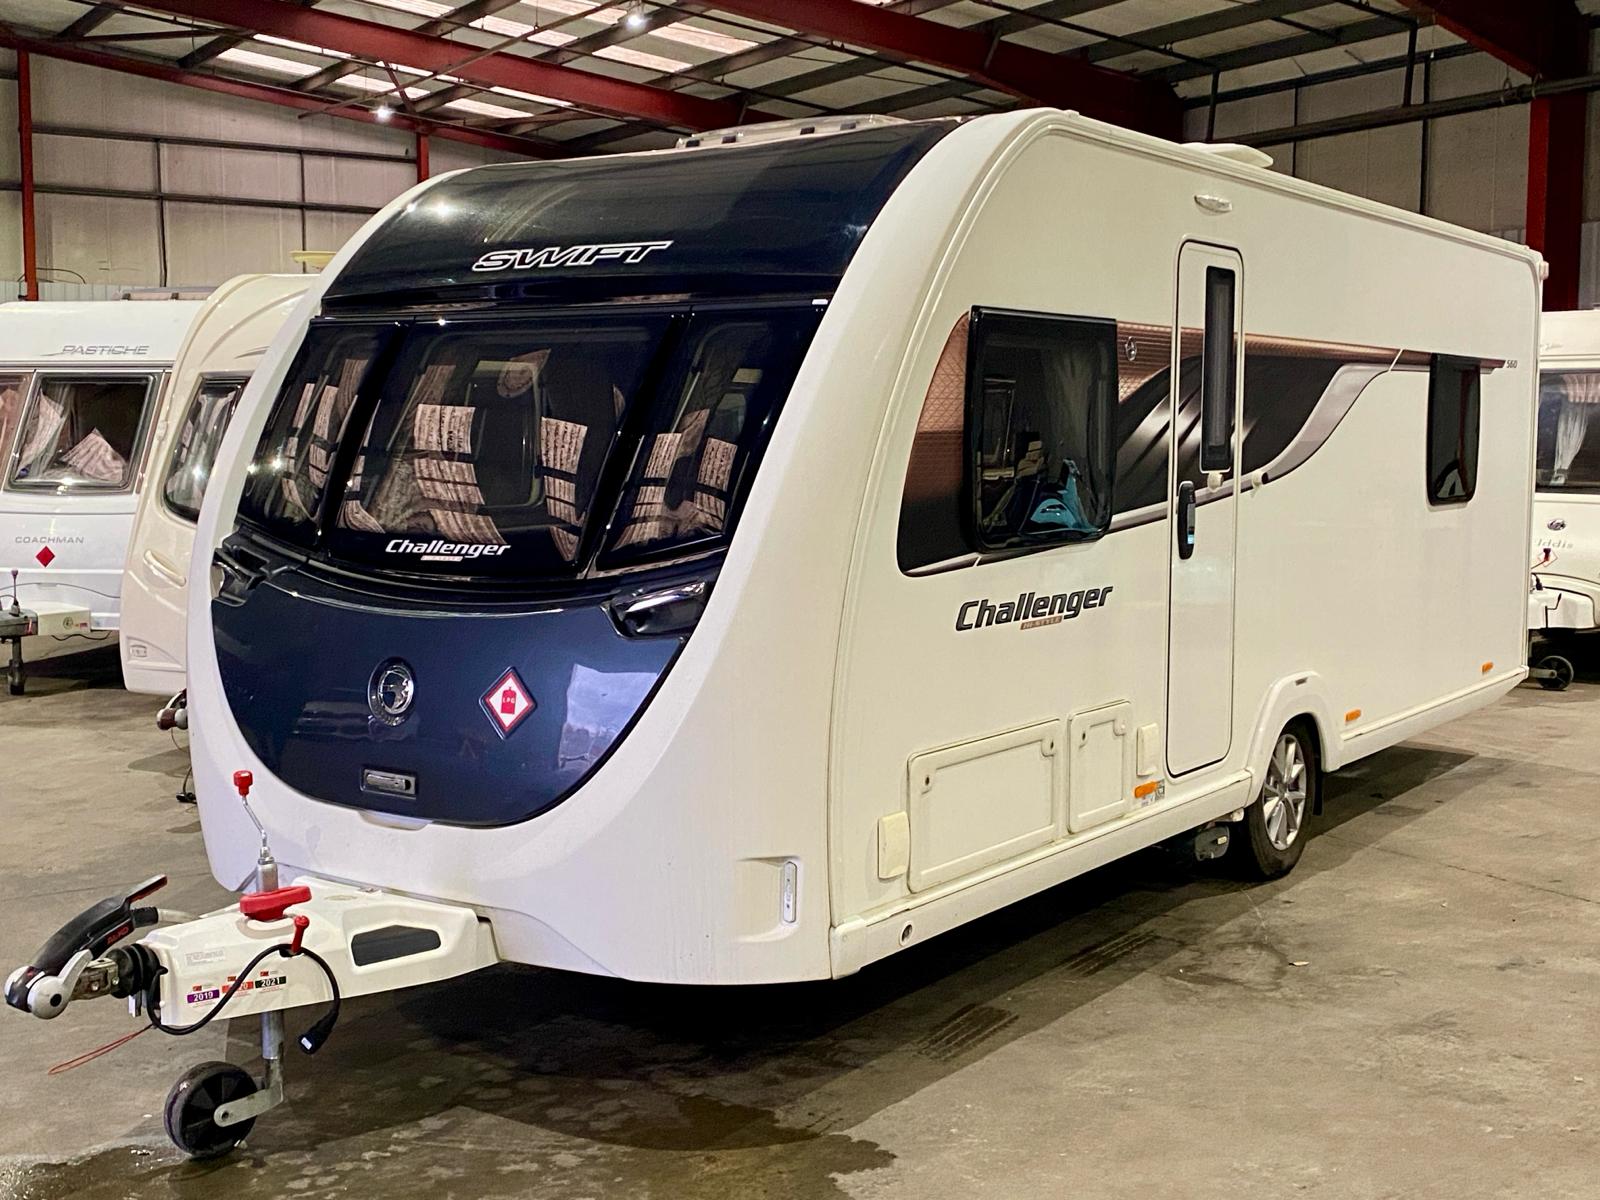 Swift Challenger Hi Style 560 2019 Caravan